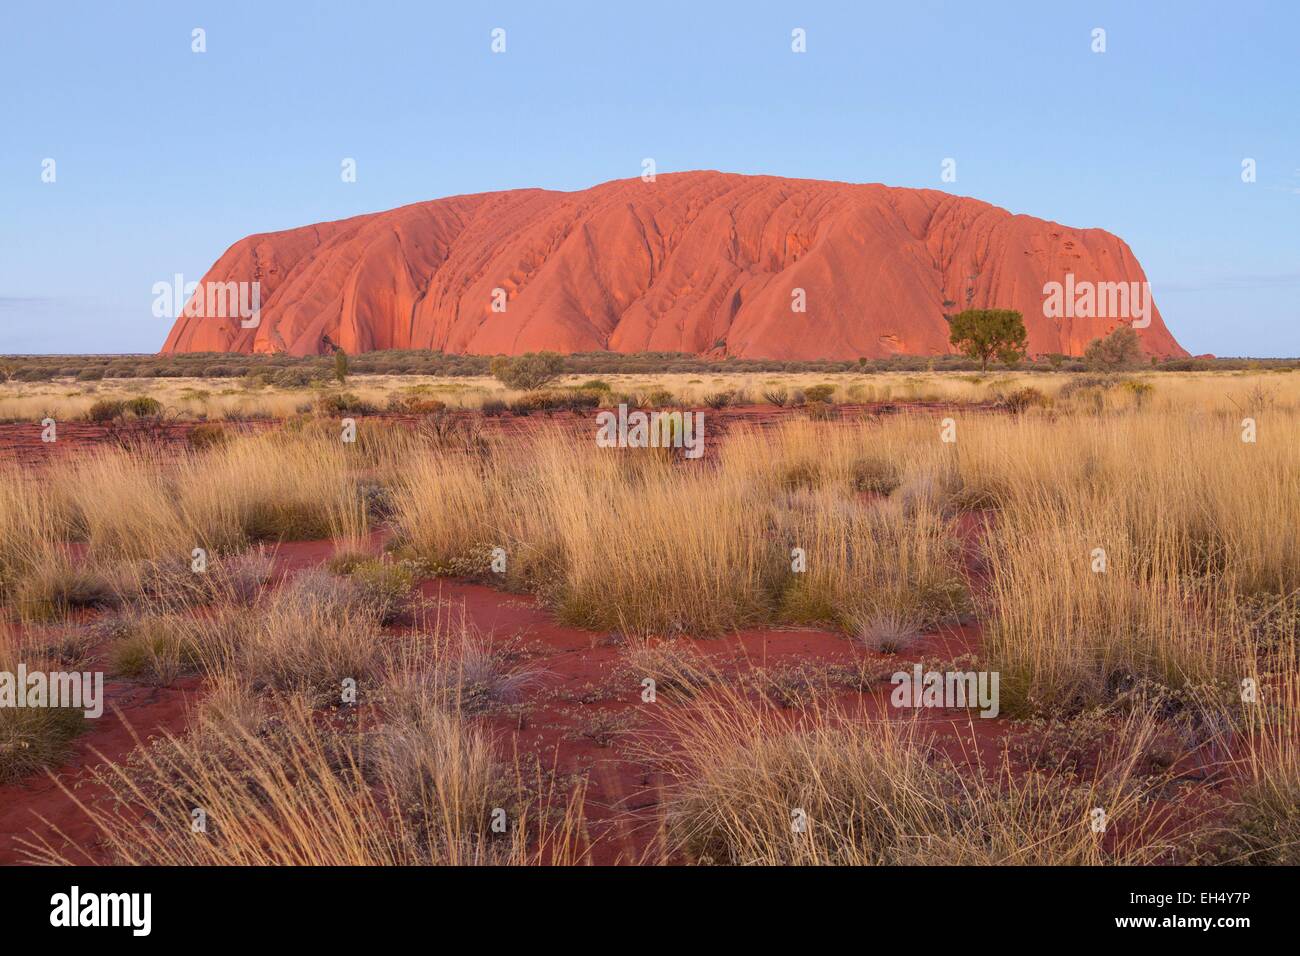 Australien, Northern Territory, Uluru-Kata Tjuta National Park als Weltkulturerbe der UNESCO, Ayers Rock oder Uluru aufgeführt, Sandstein rock heiligen Ort für die Ureinwohner Stockfoto